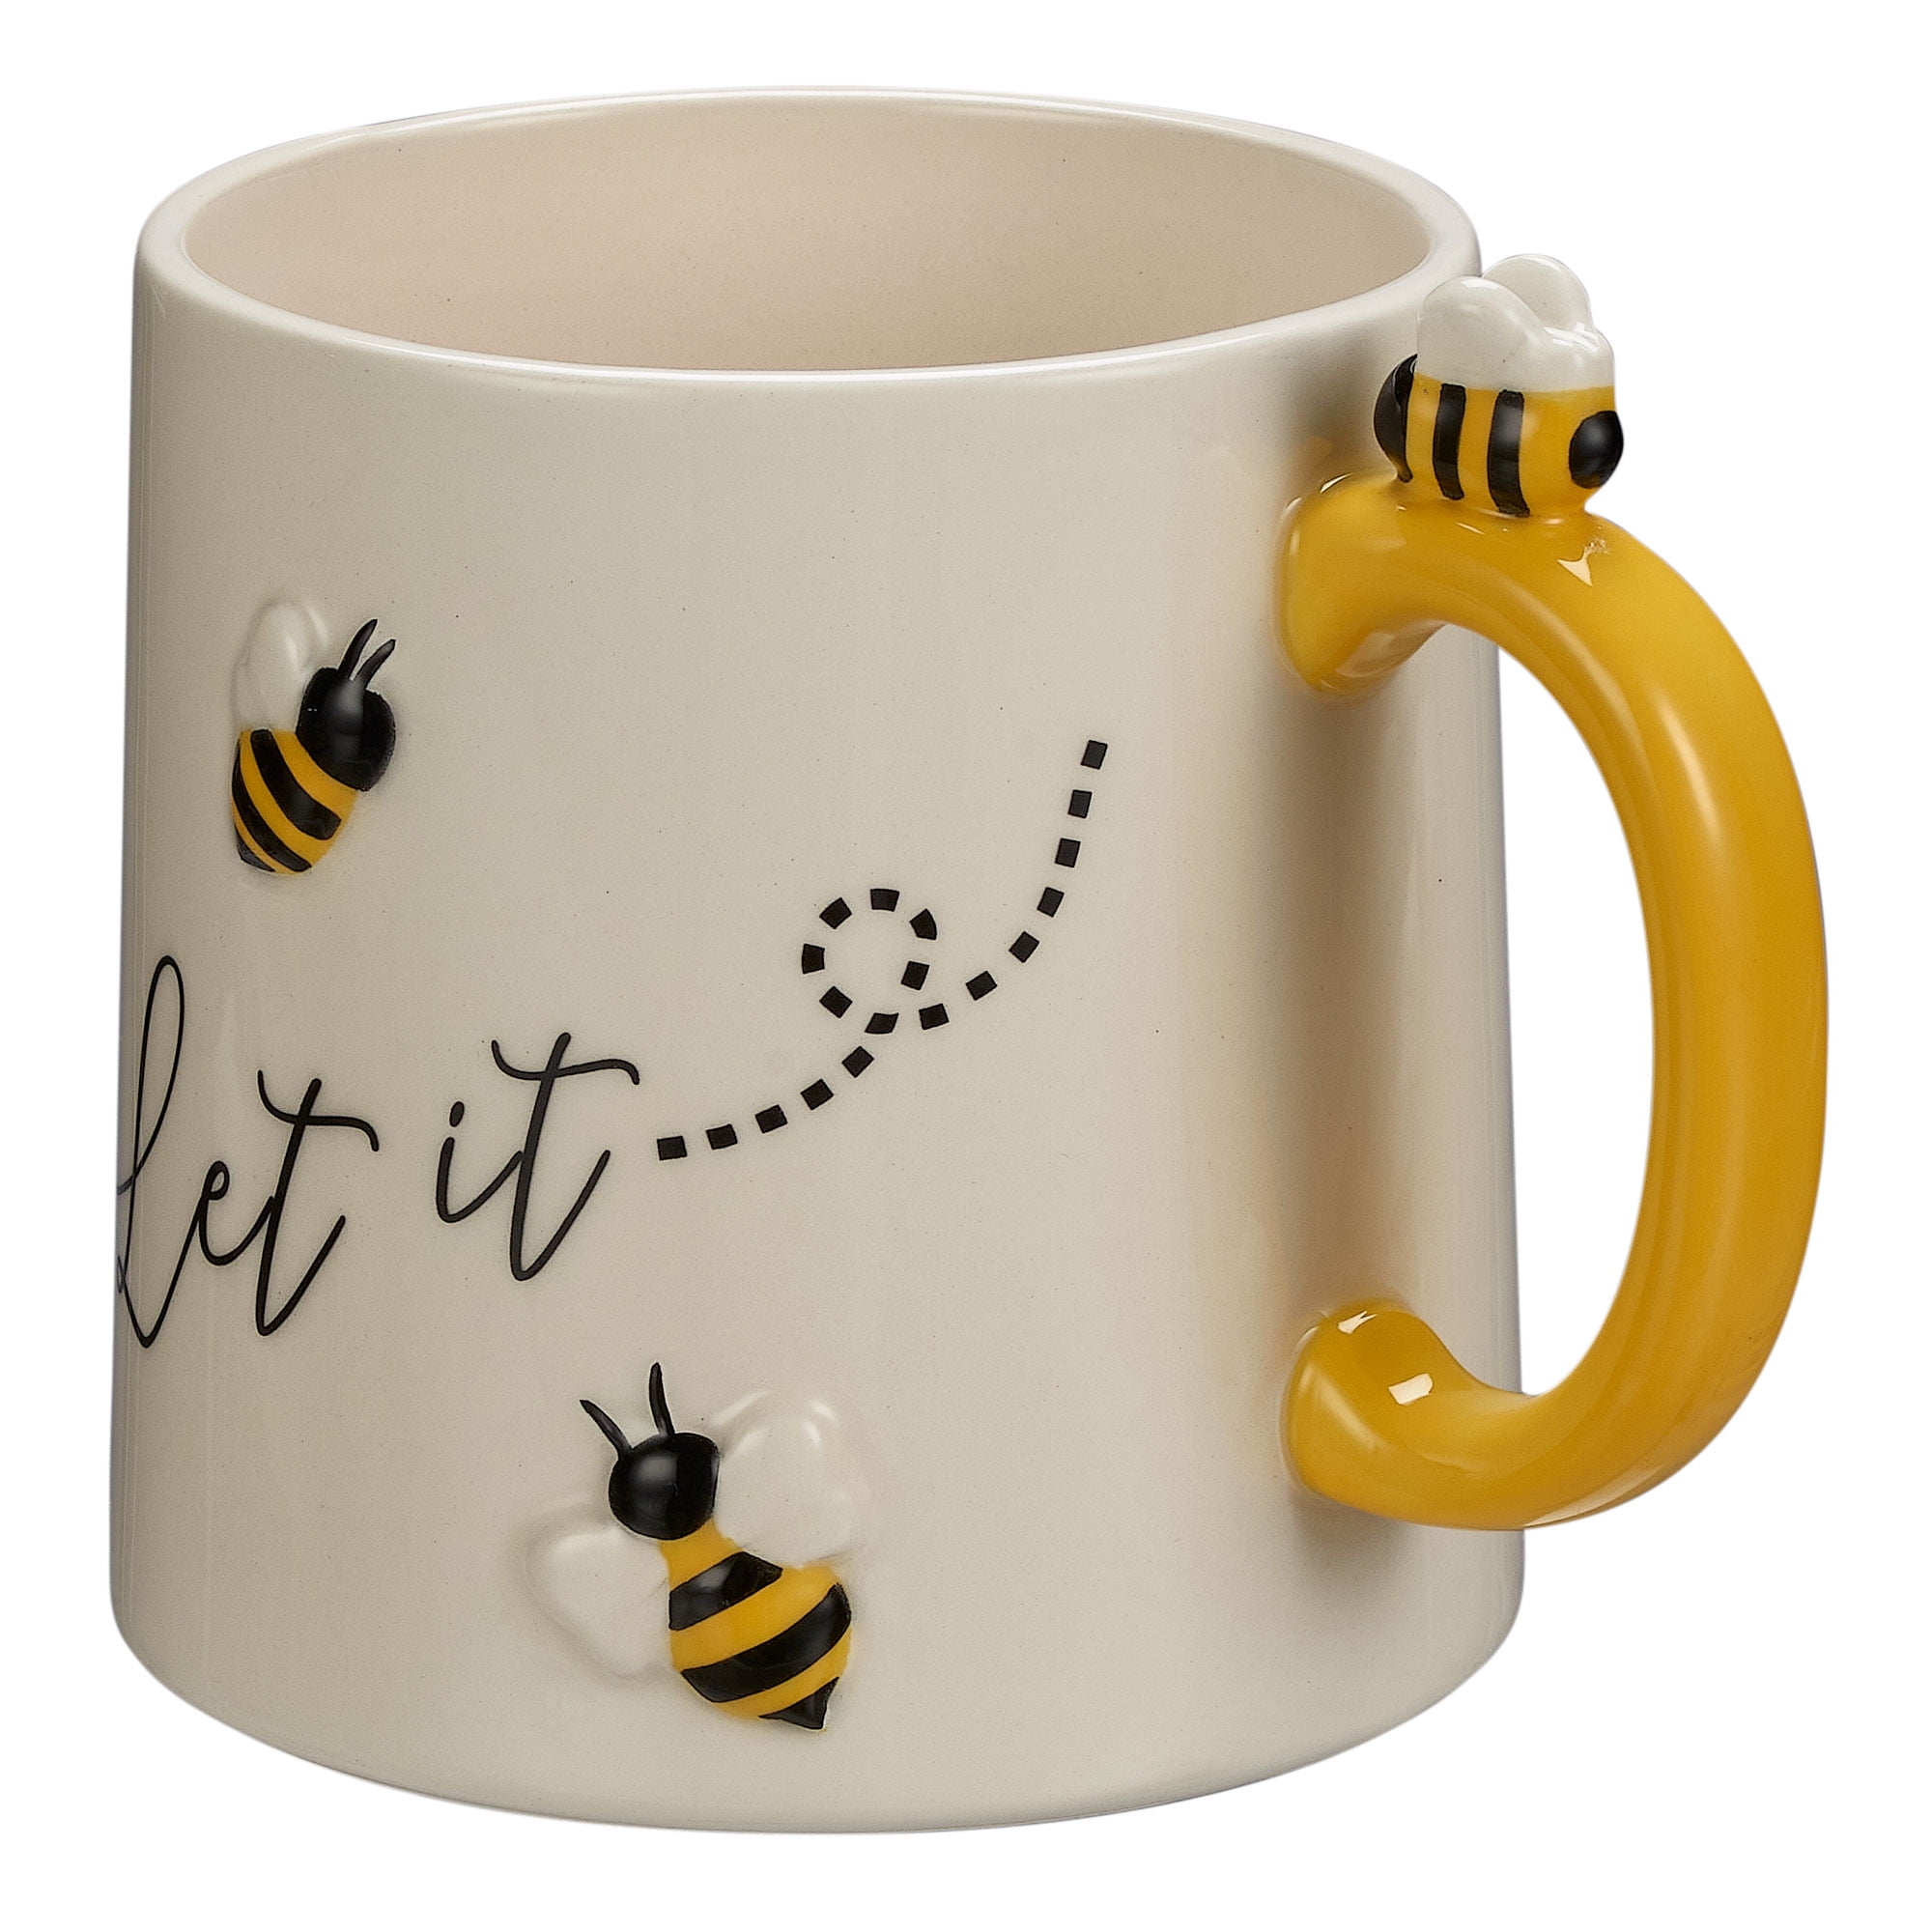 Bumble bee, bumblebee, bumble bee gift, bumblebee gifts, bumblebee mug for  her, smiling bumblebee